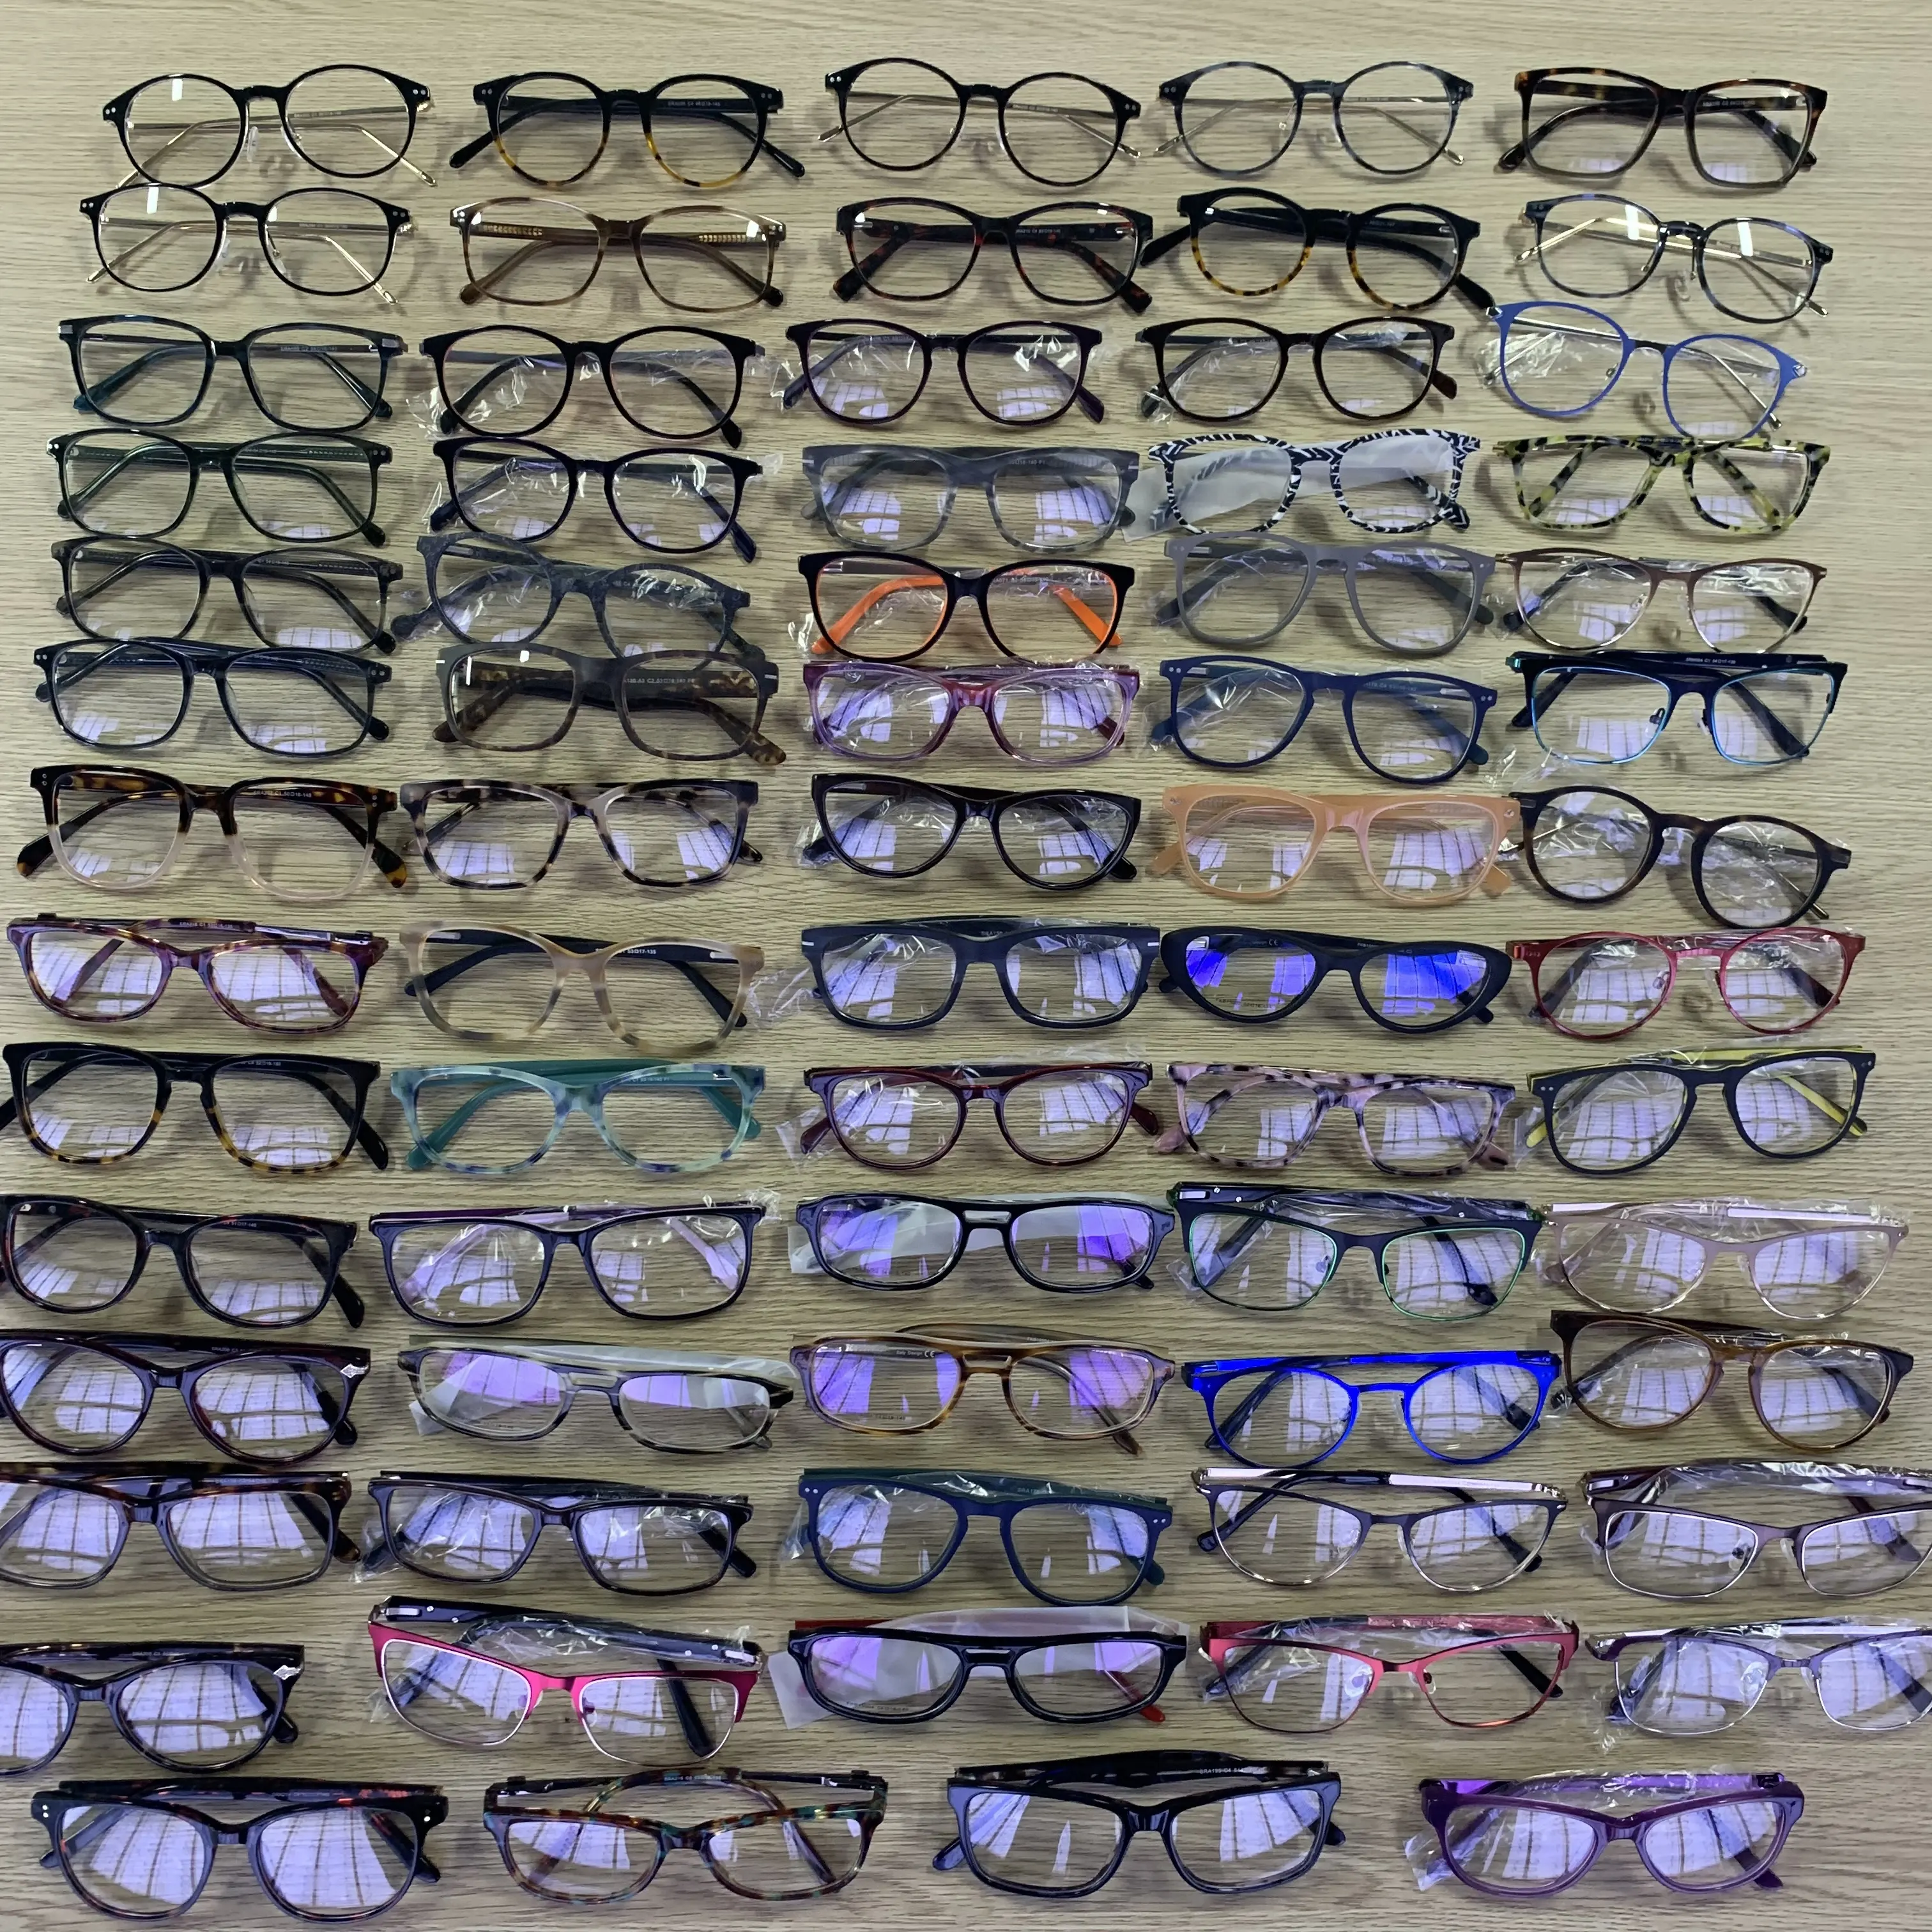 Bingkai Kacamata Optikal Asetat Murah, Stok Kacamata Tersedia Campuran